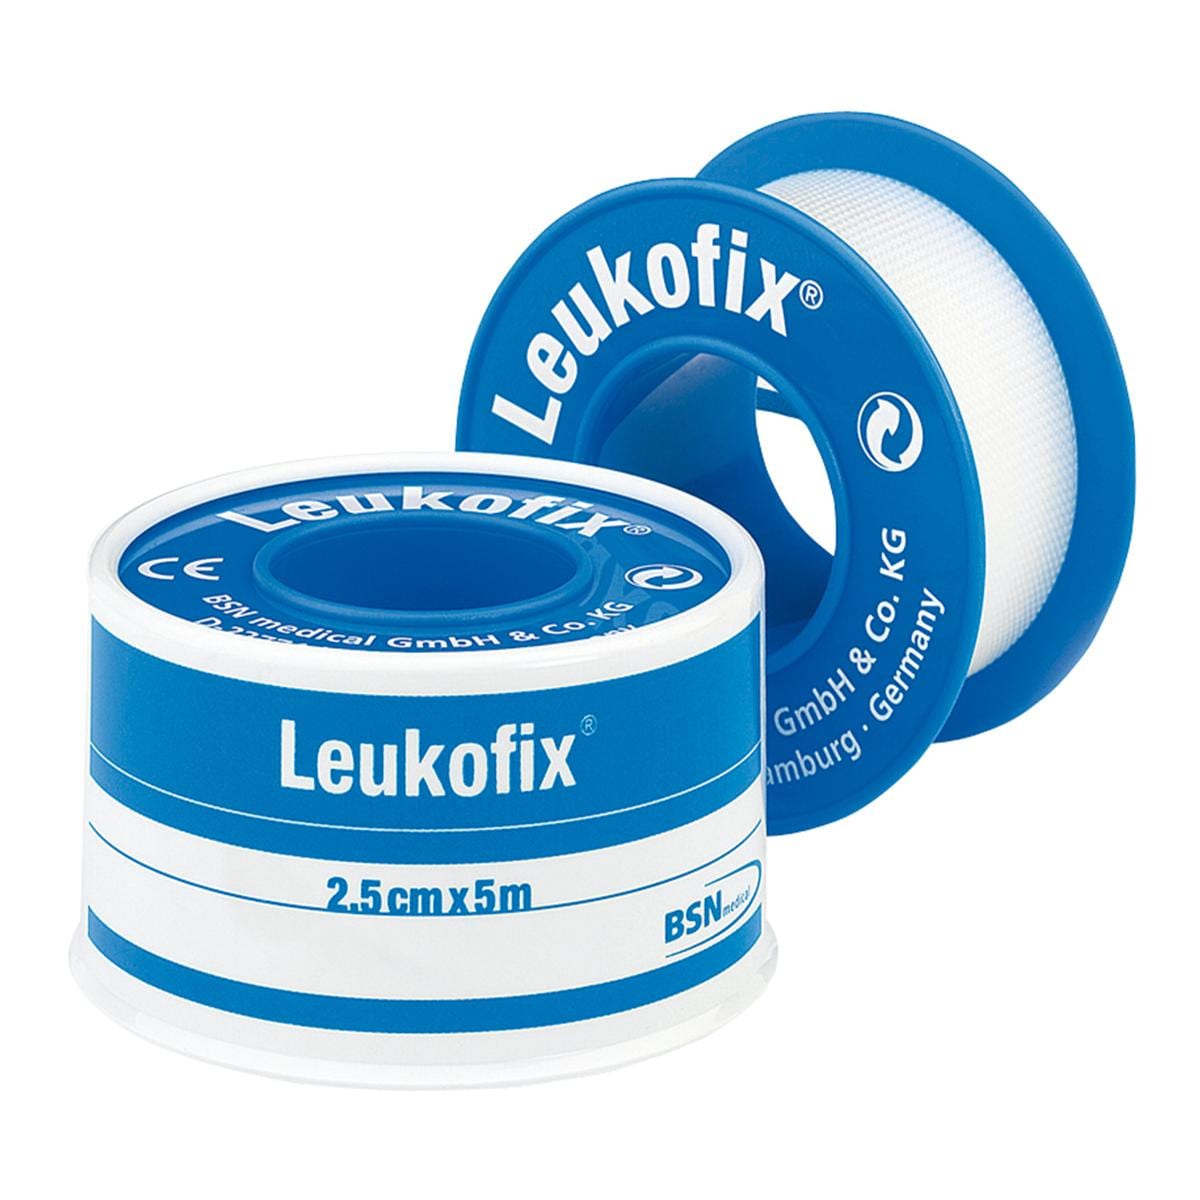 Leukofix - 5cm x 5m, 6 stuks